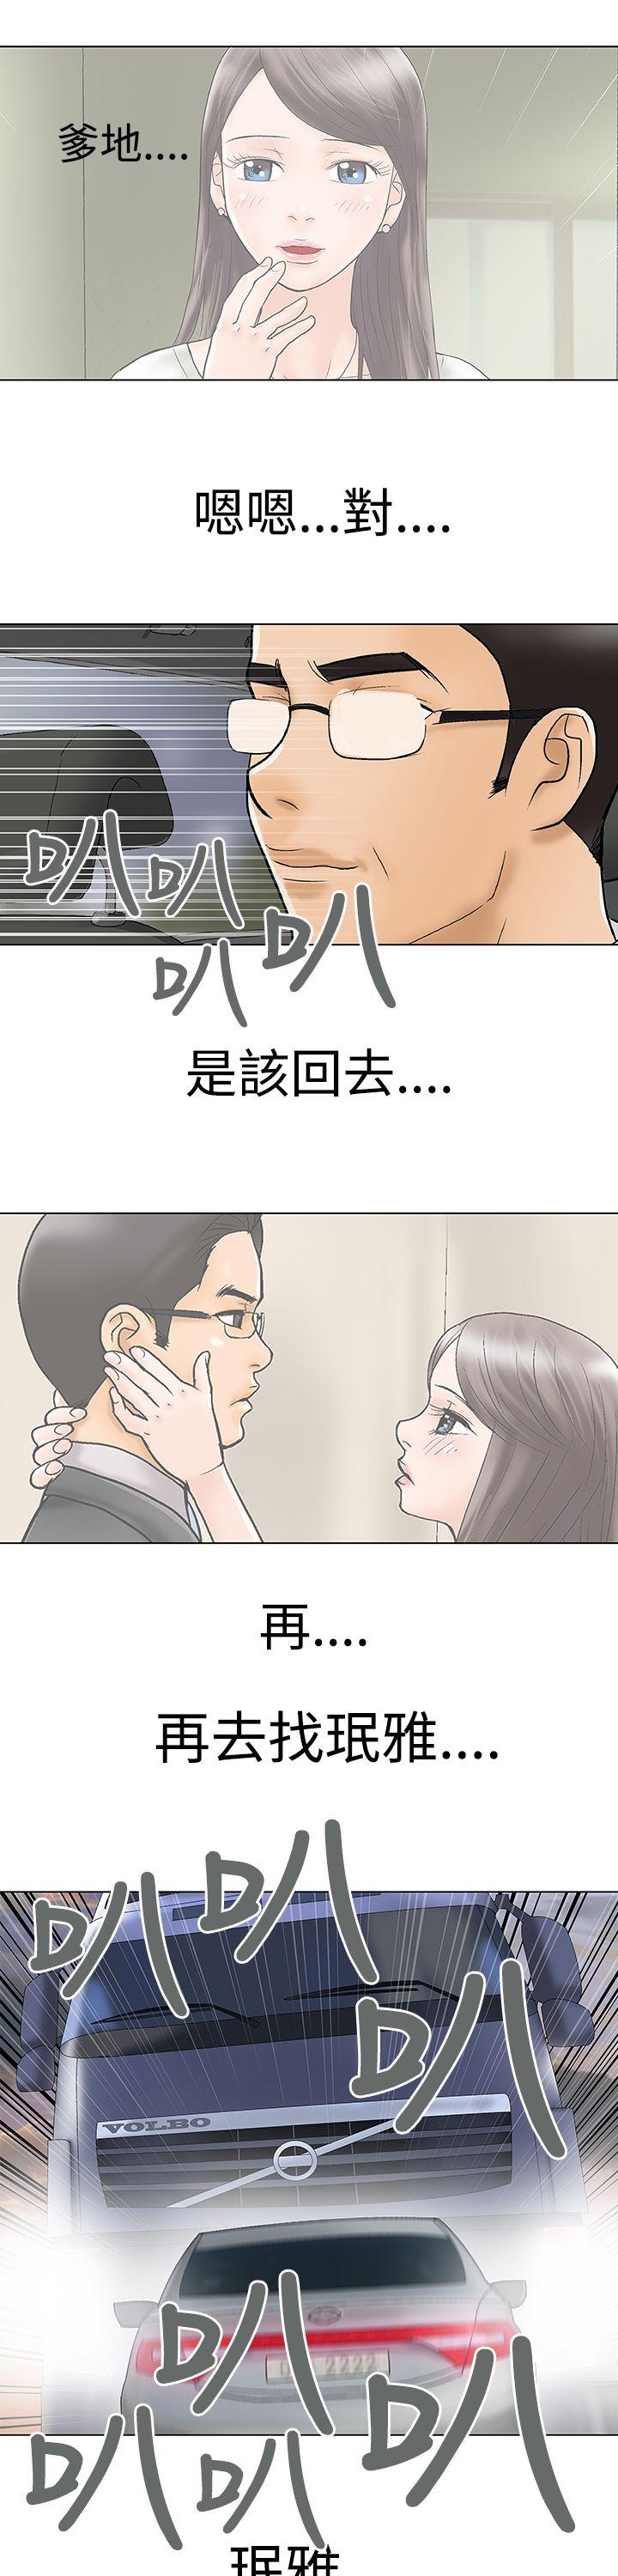 危险的爱(完结)  最终话 漫画图片11.jpg